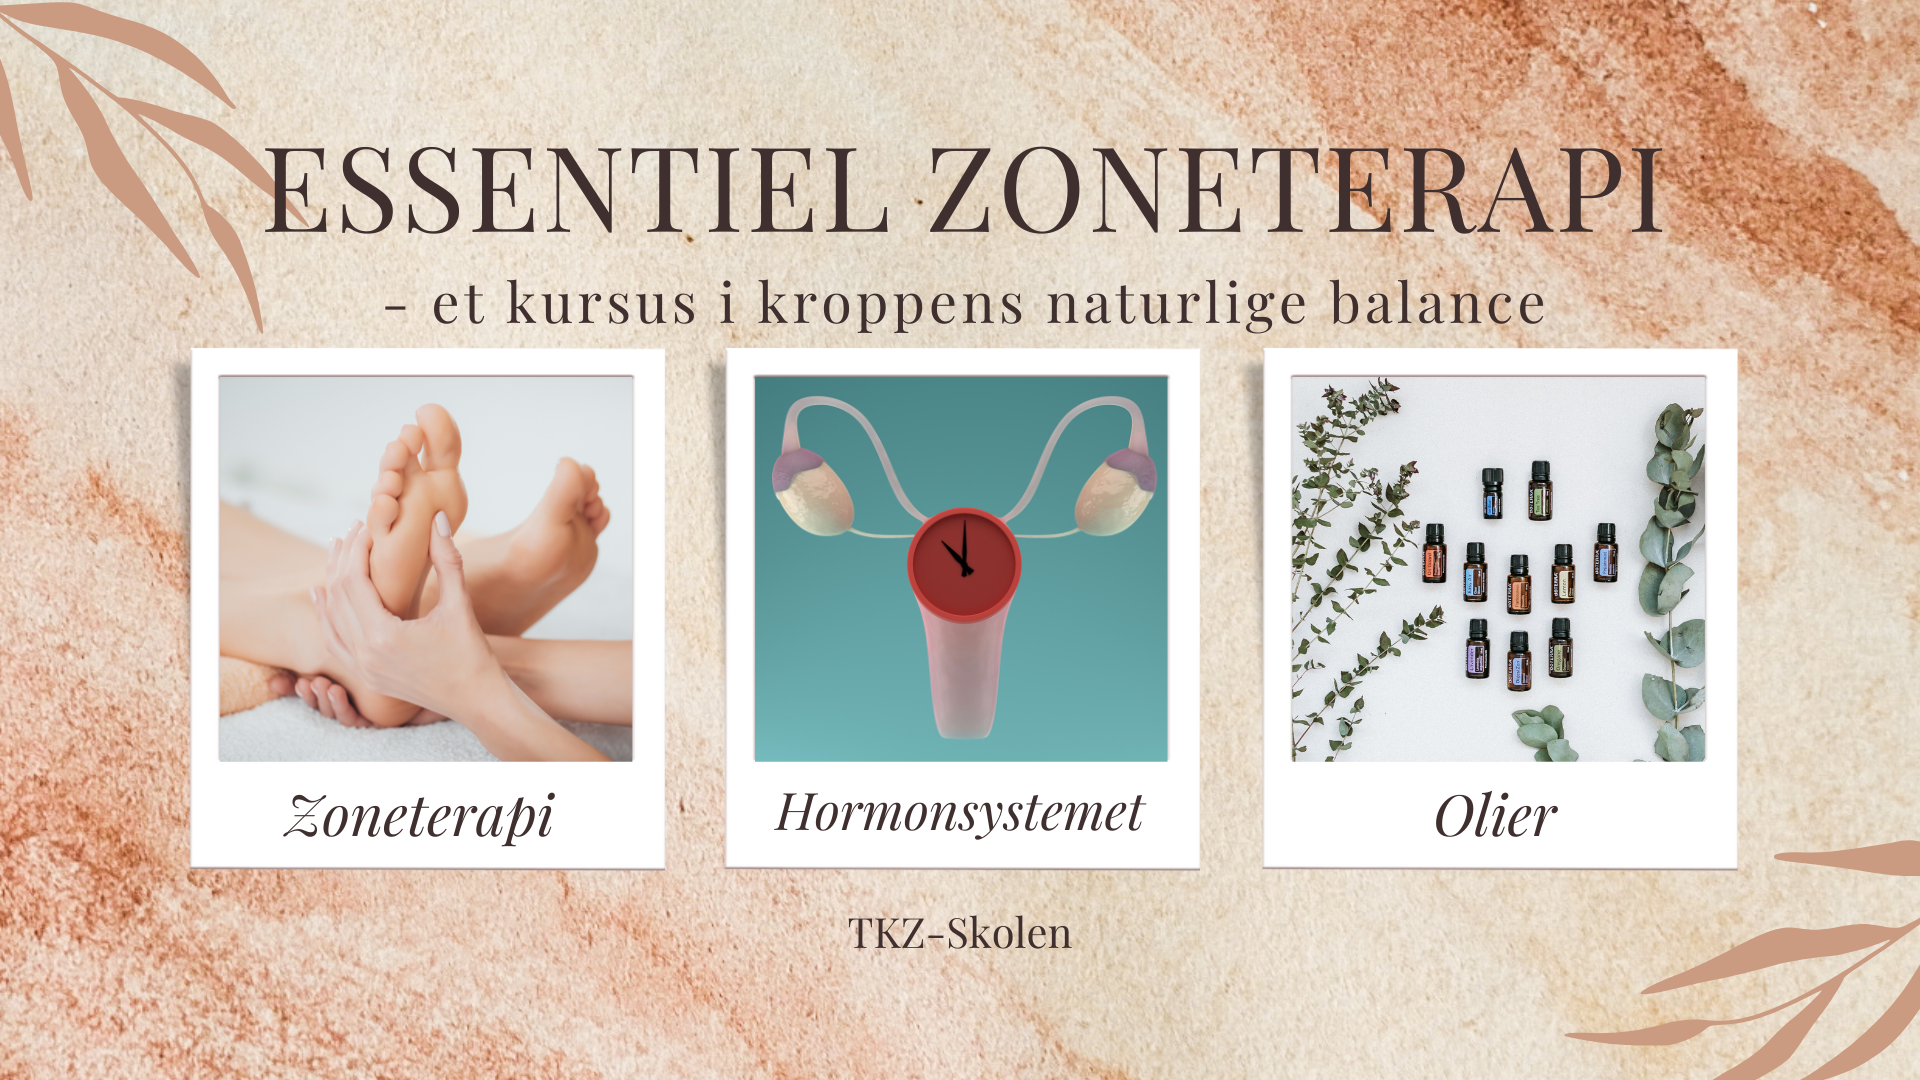 Essentiel zoneterapi - hormoner